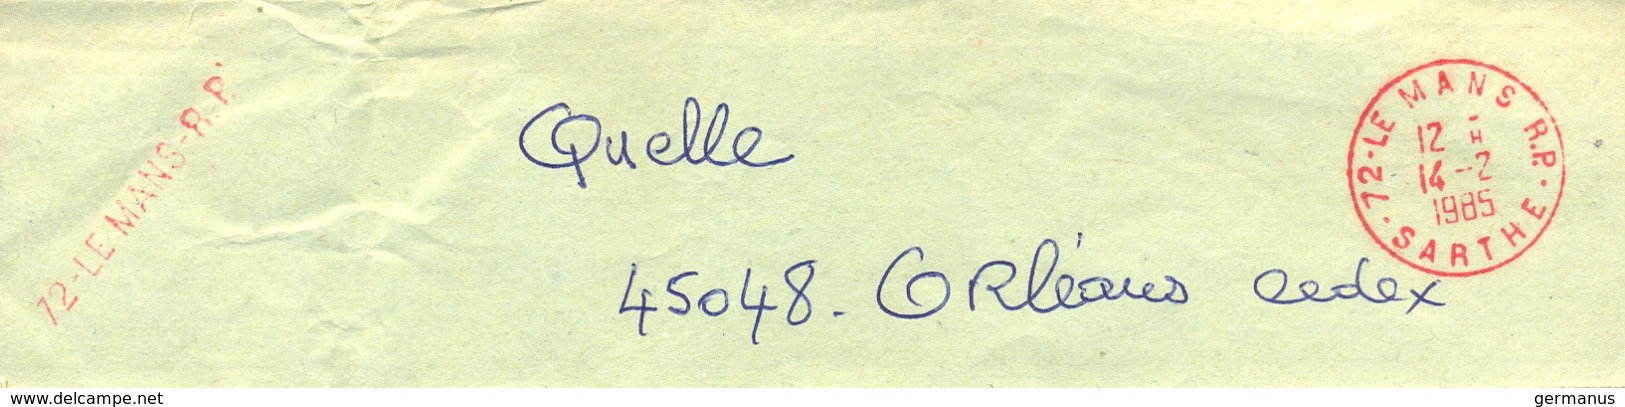 COLLIER SAC POSTAL TàD & GRIFFE Rouge 72-LE MANS R.P.  - SARTHE - Du 14-8-1985 => QUELLE 45048 ORLEANS CEDEX - Documents Of Postal Services